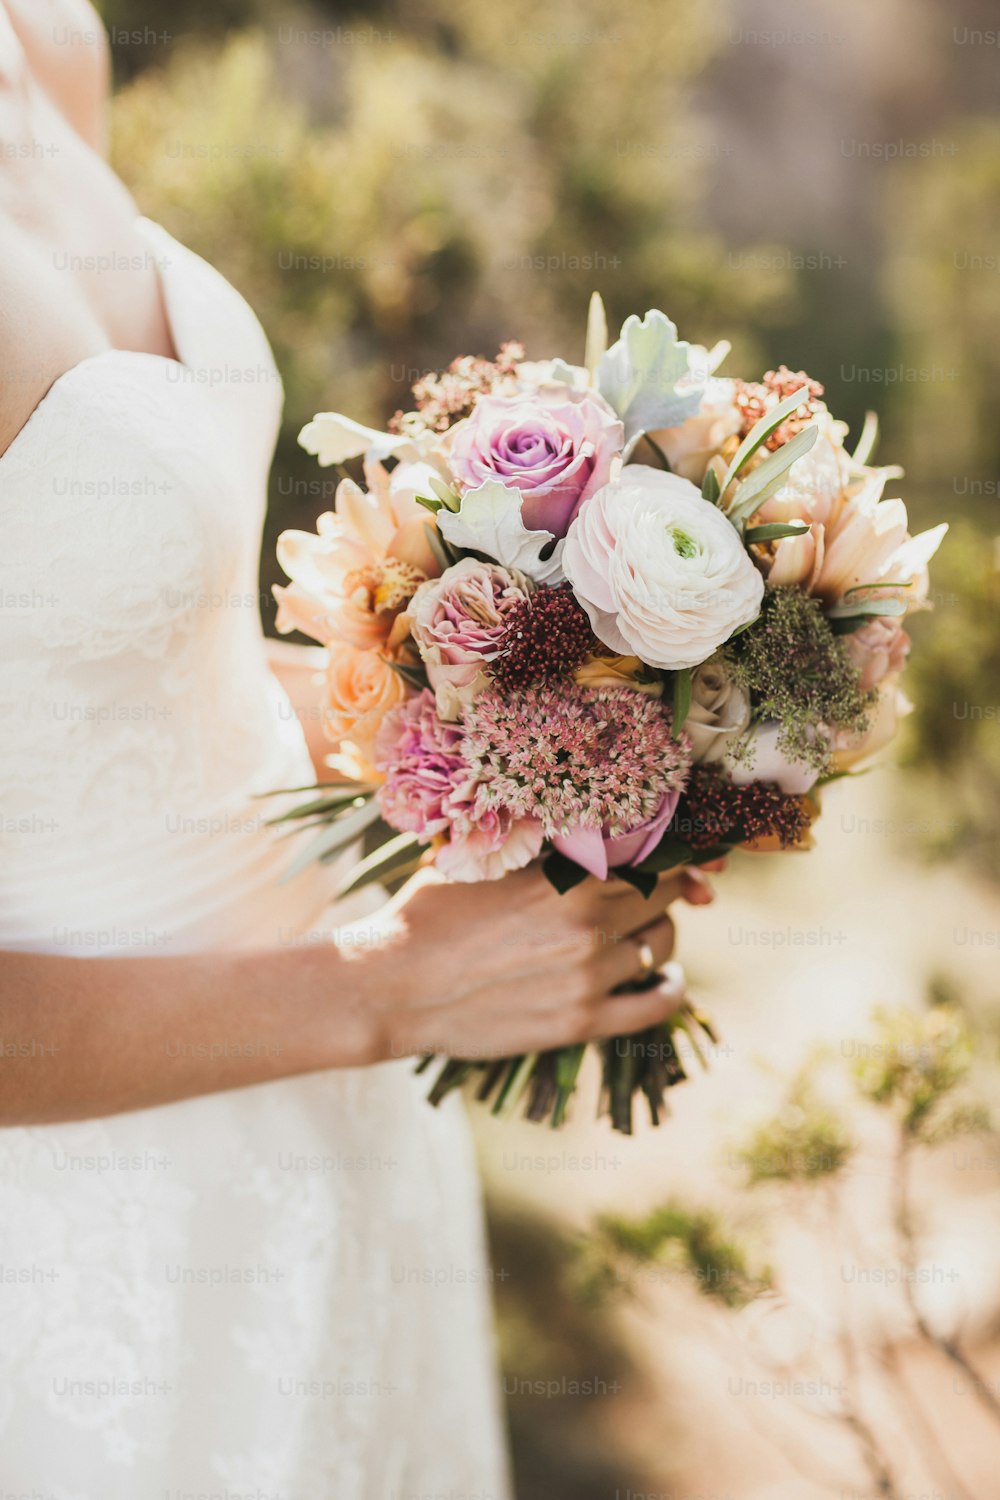 Braut hält in Händen kleinen Hochzeitsstrauß in orangefarbenen Herbstfarben. Rosa und orangefarbene Rosen, weiße Pfingstrose, getrocknete Blüten und Blätter.